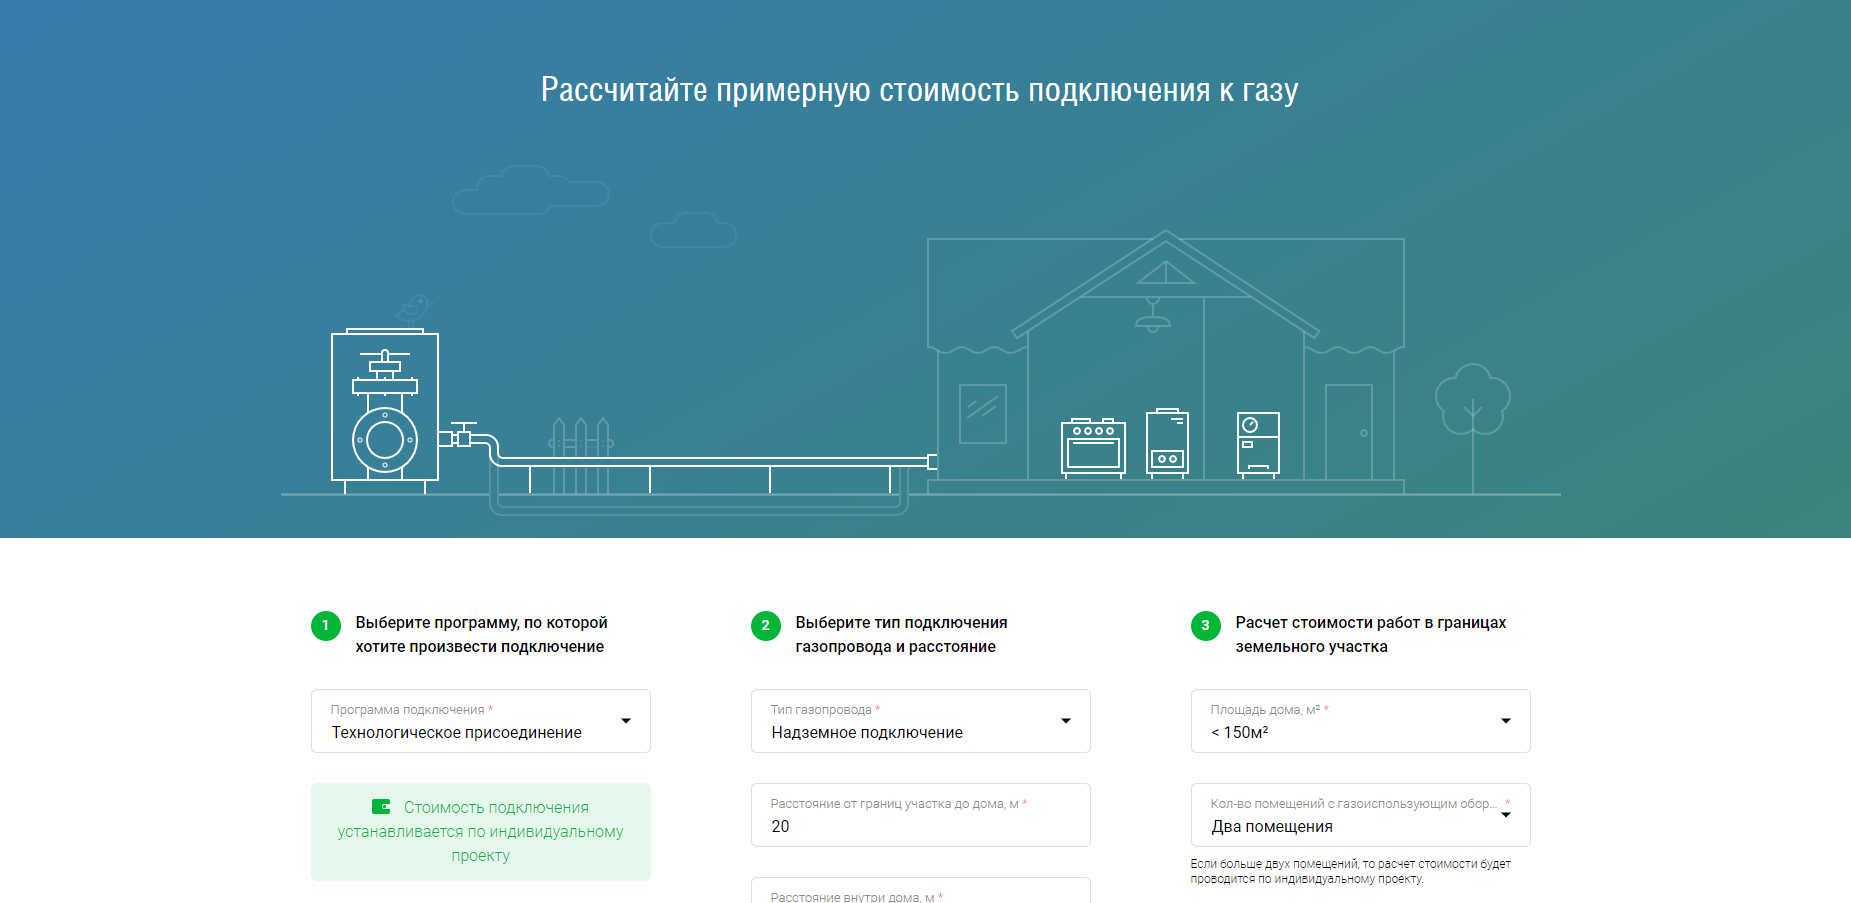 Запущен официальный портал о газификации РФ.